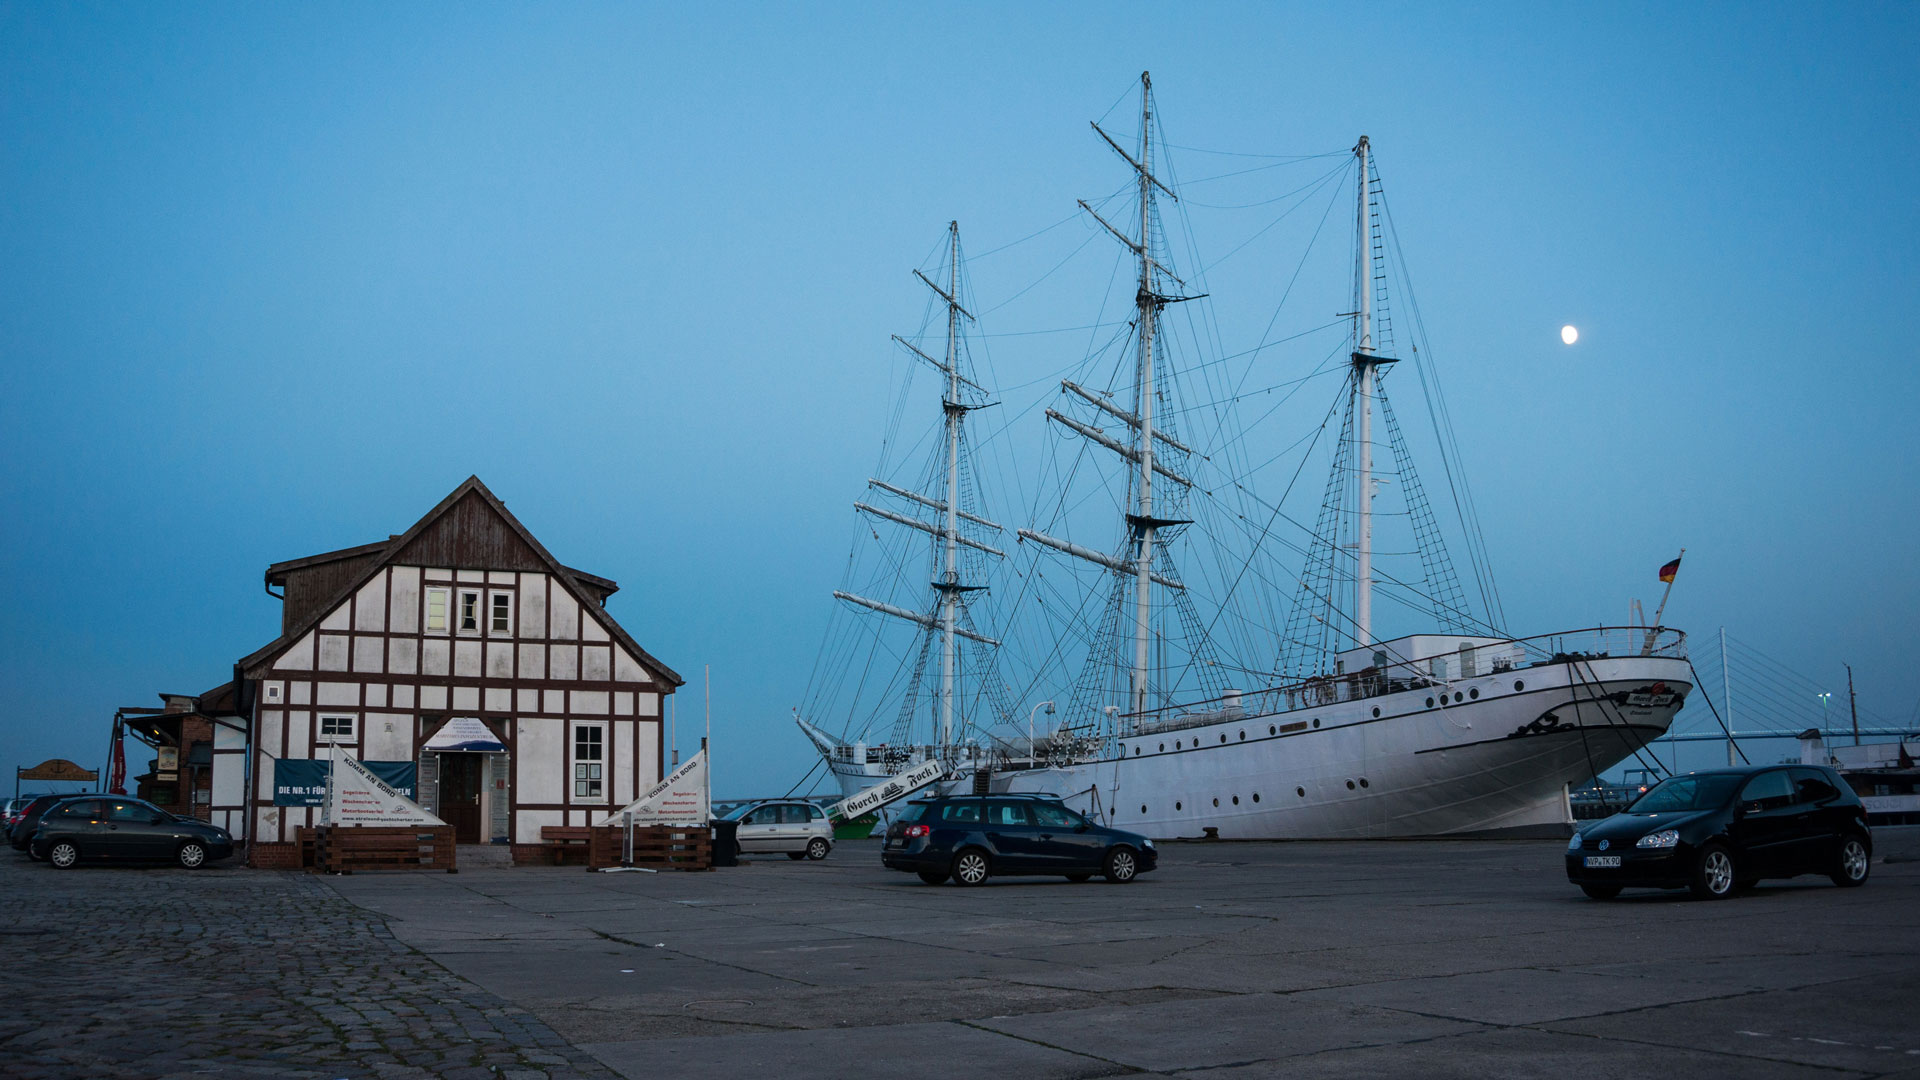 Hafen Und Hafeninsel 2014 2015 Jrgs Fotowelt